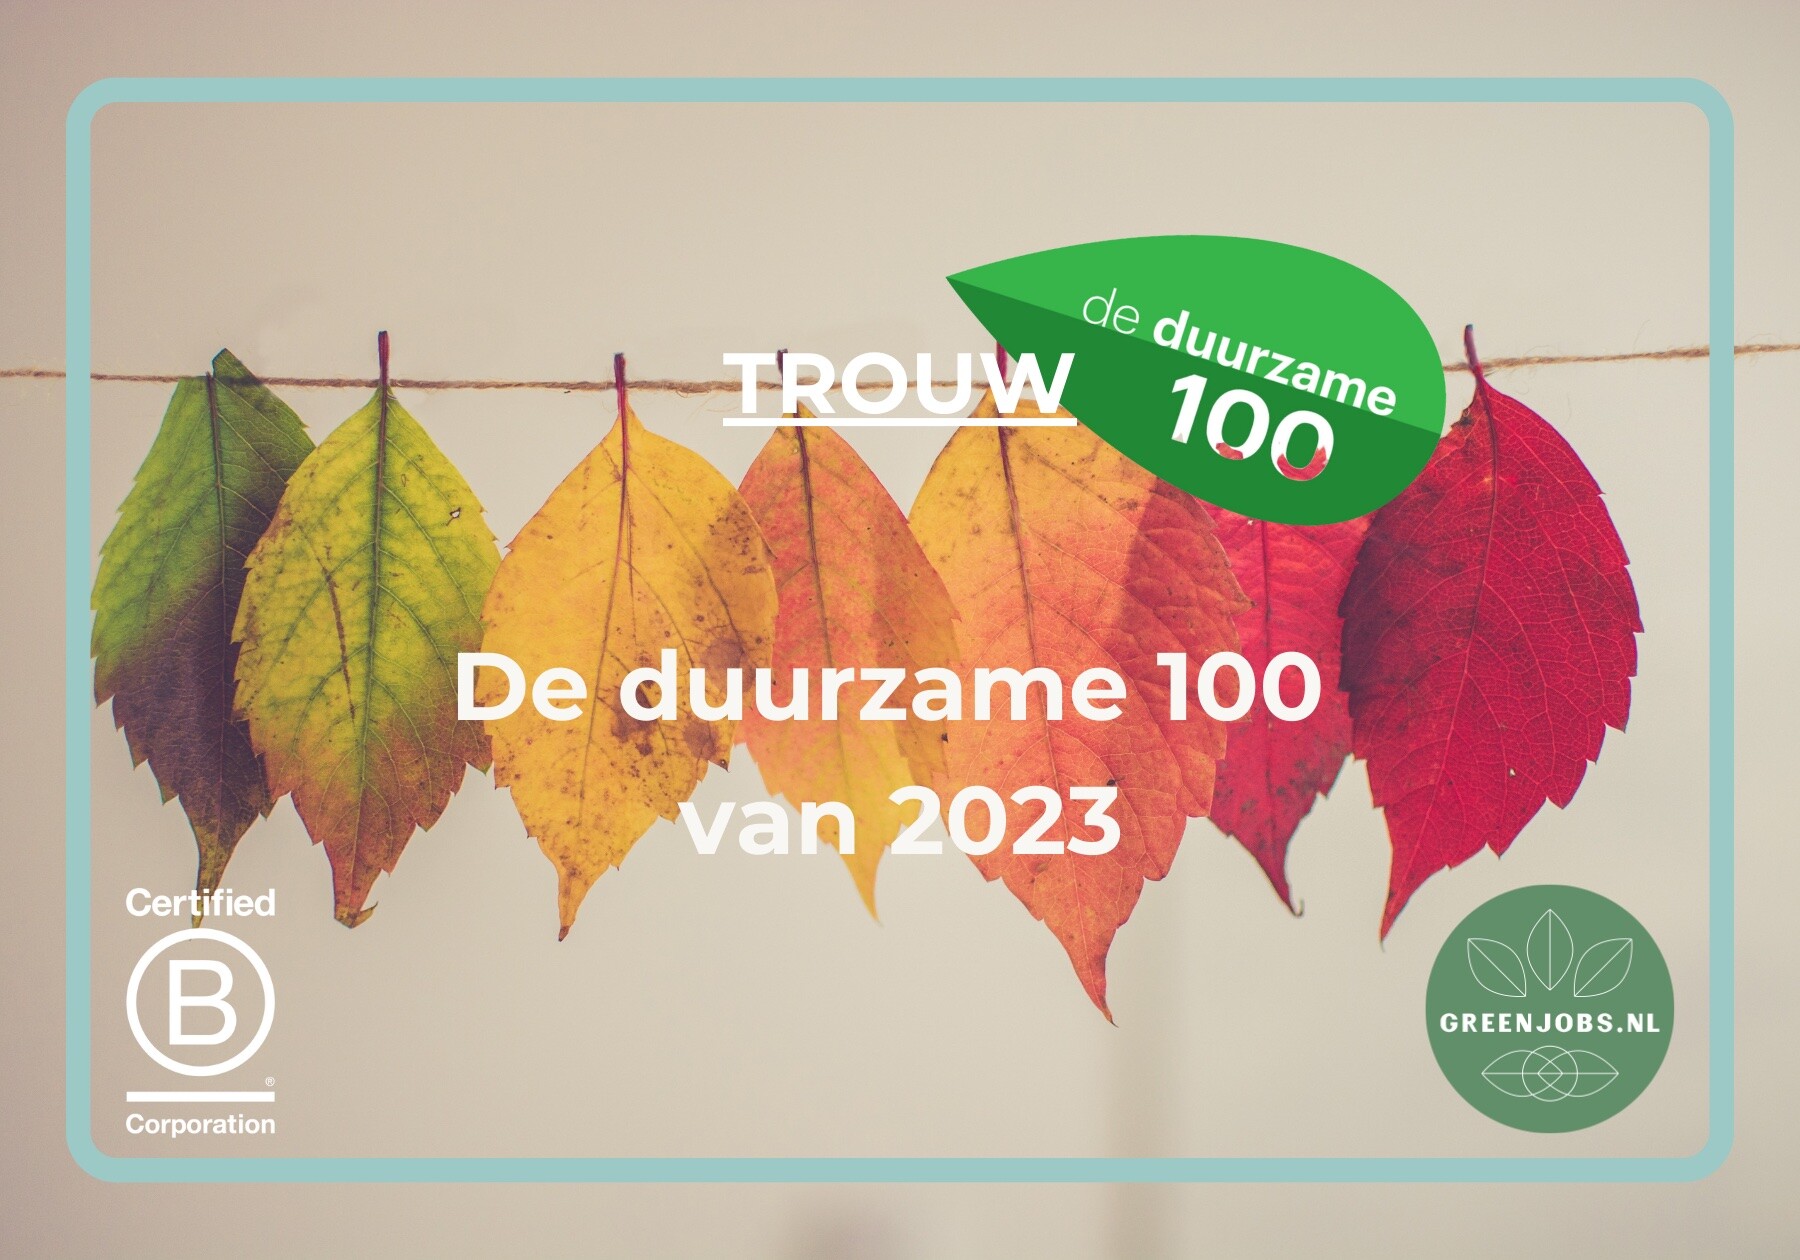 De Duurzame 100 van 2023 is bekend!